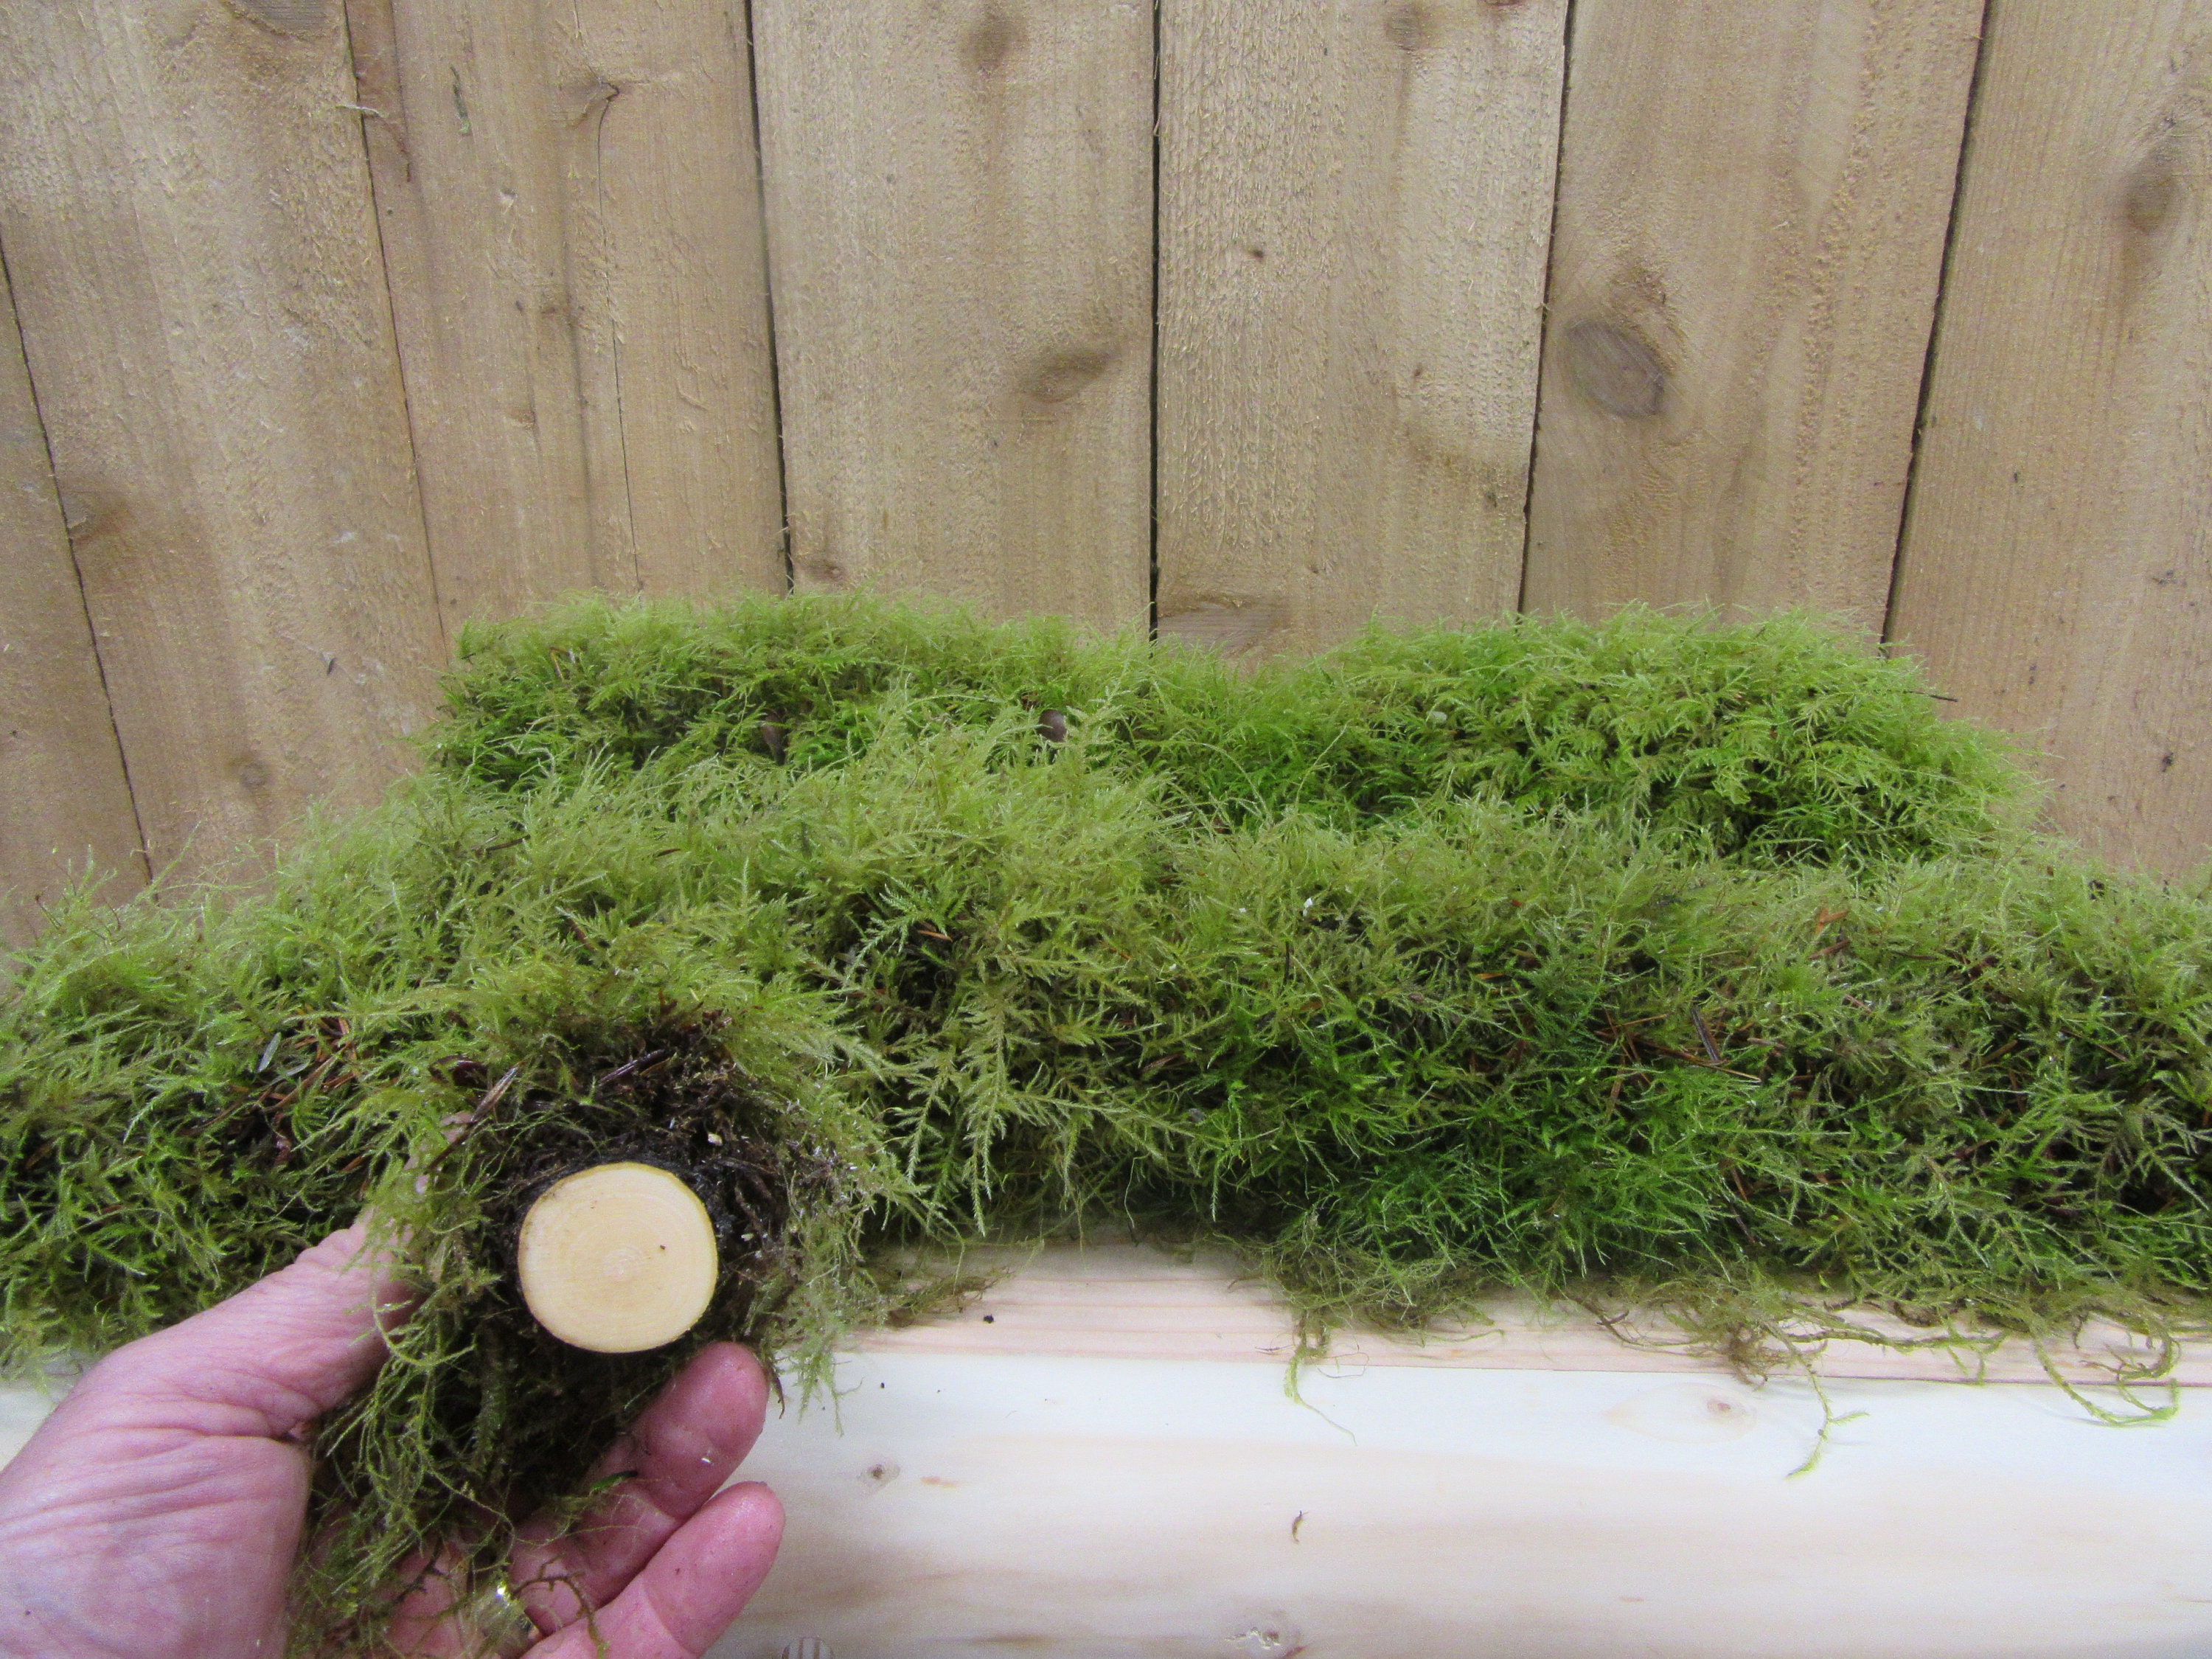 Tree Moss (Climacium Americanum / Dendroides) Rare Live Moss for Terrarium, Terrarium  Moss, Live Moss for DIY Terrarium